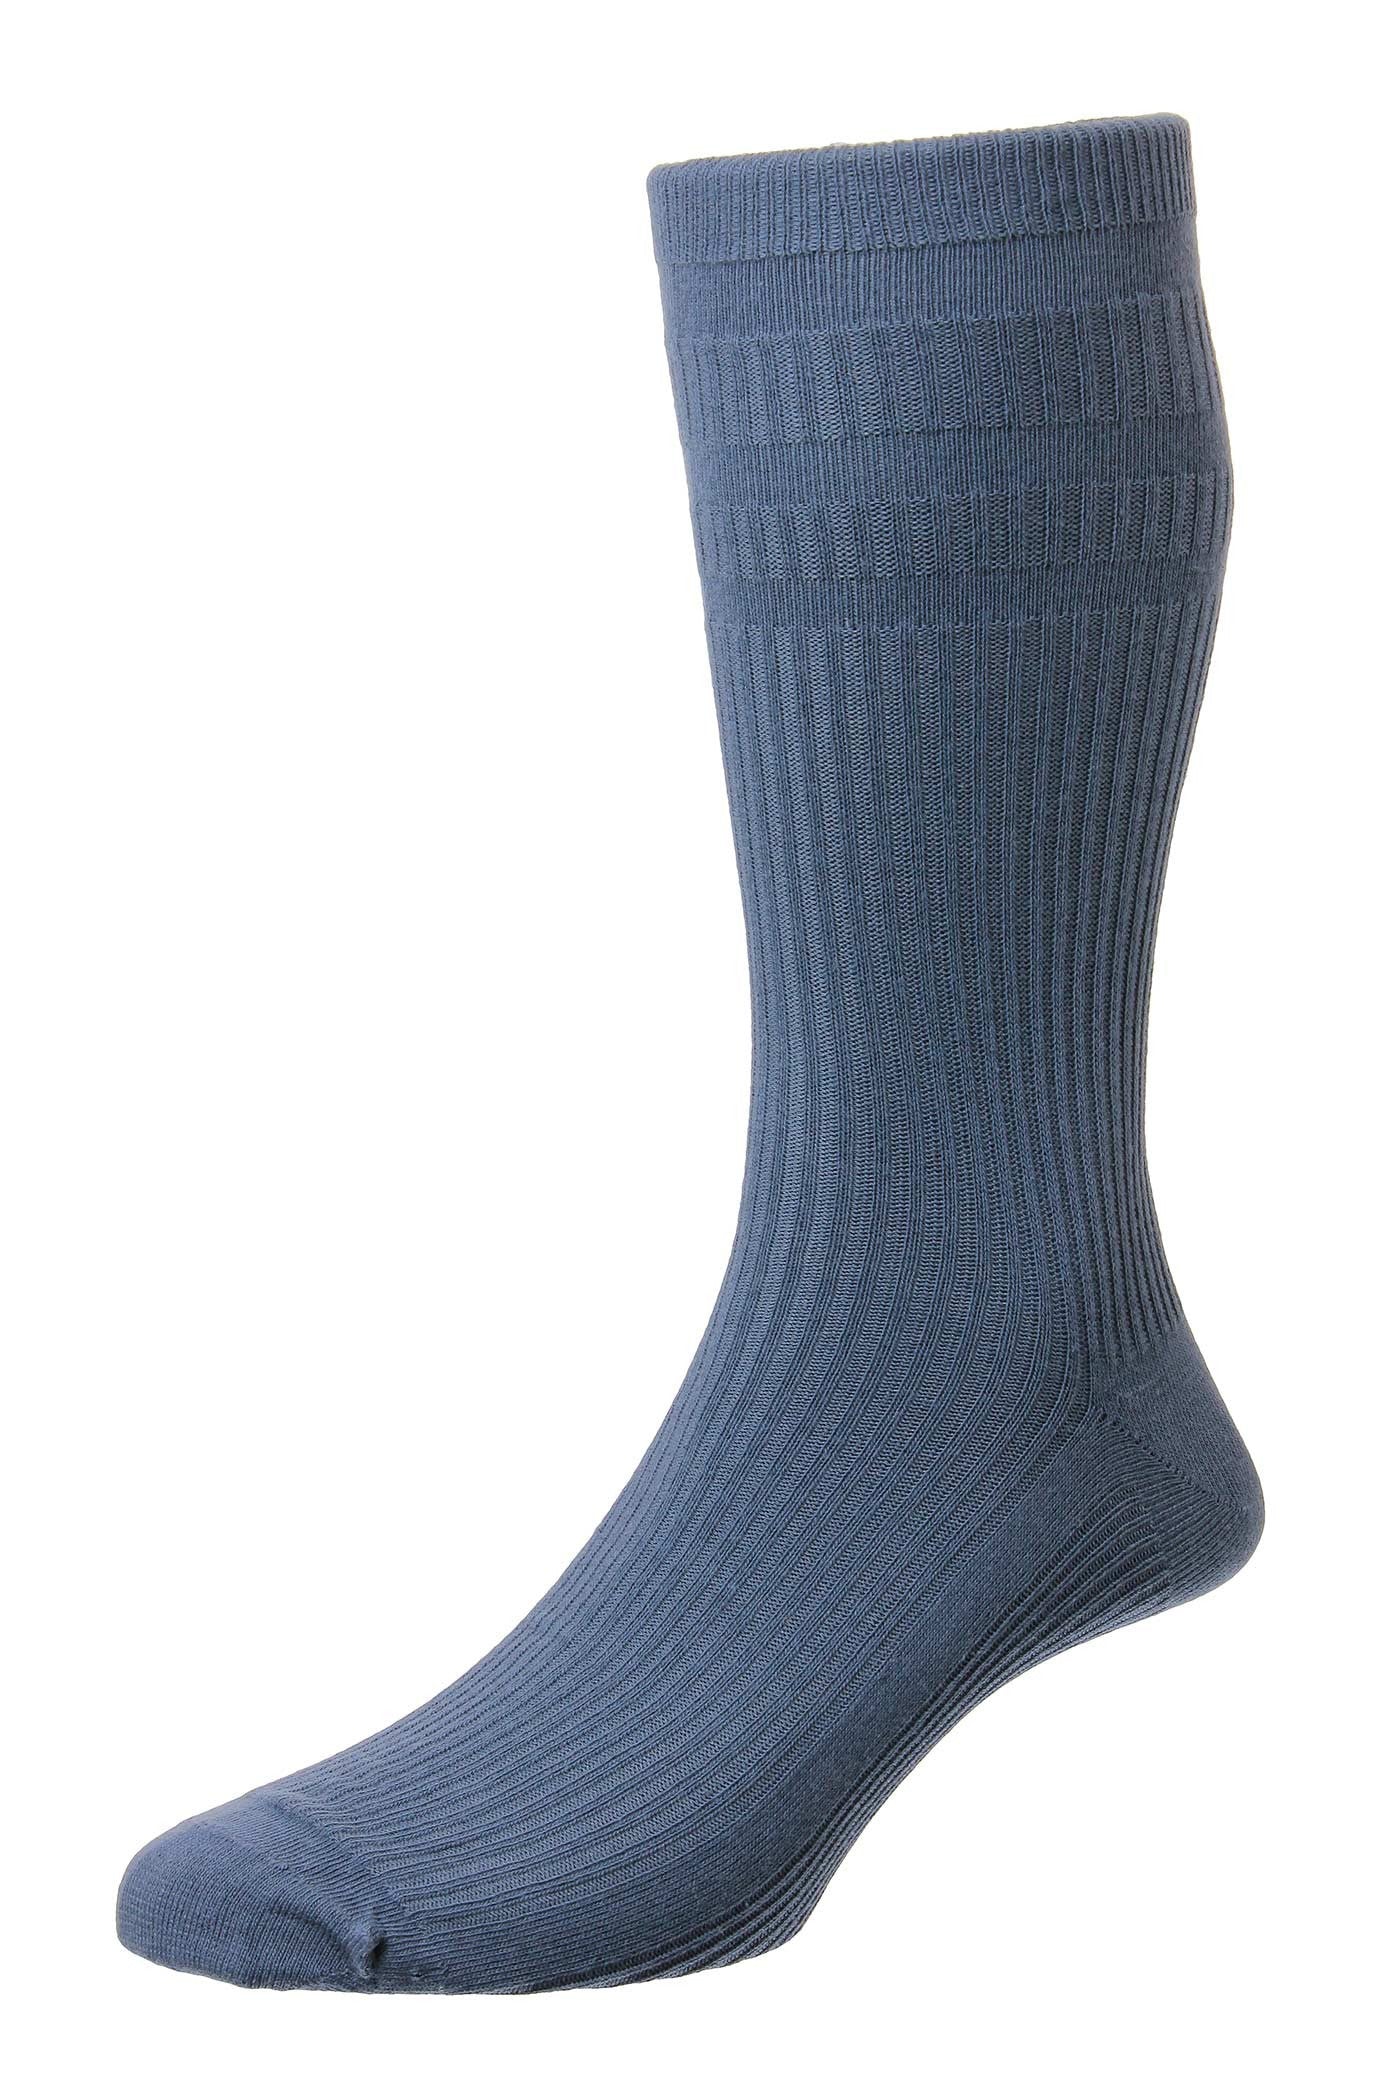 HJ Hall Wool SoftTop Socks Slate Blue